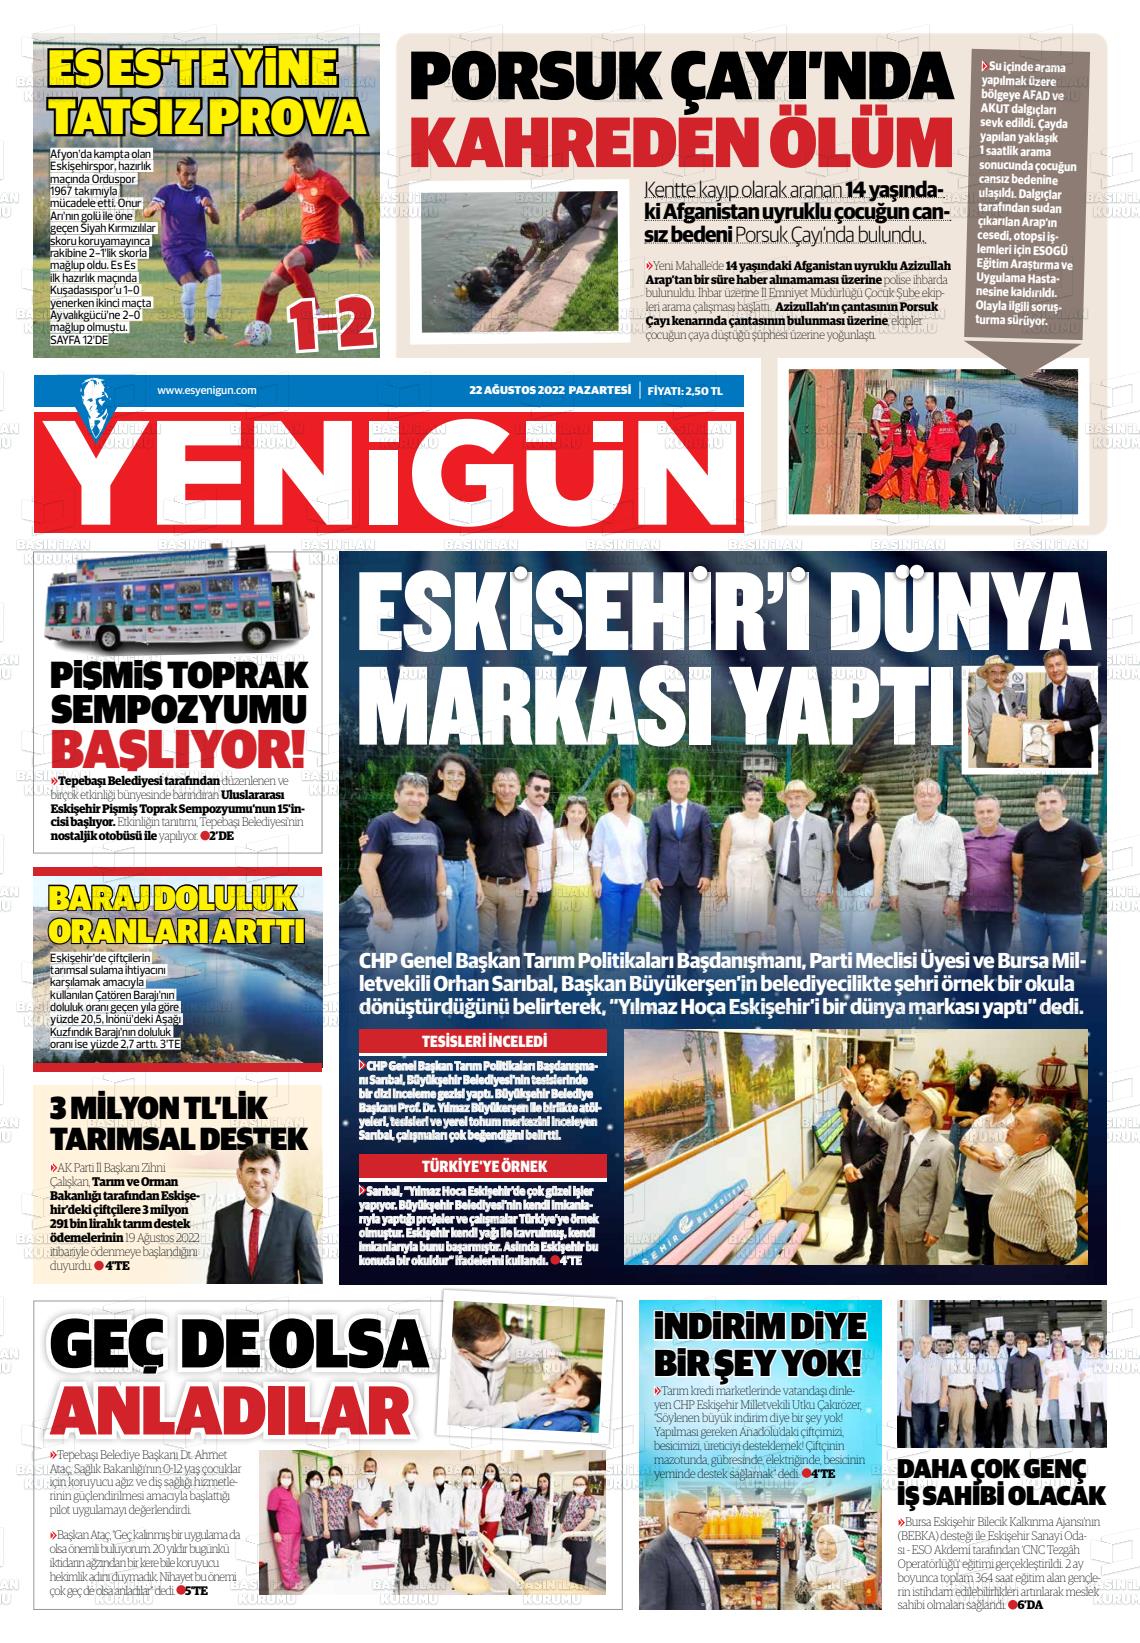 23 Ağustos 2022 Eskişehir Yeni Gün Gazete Manşeti